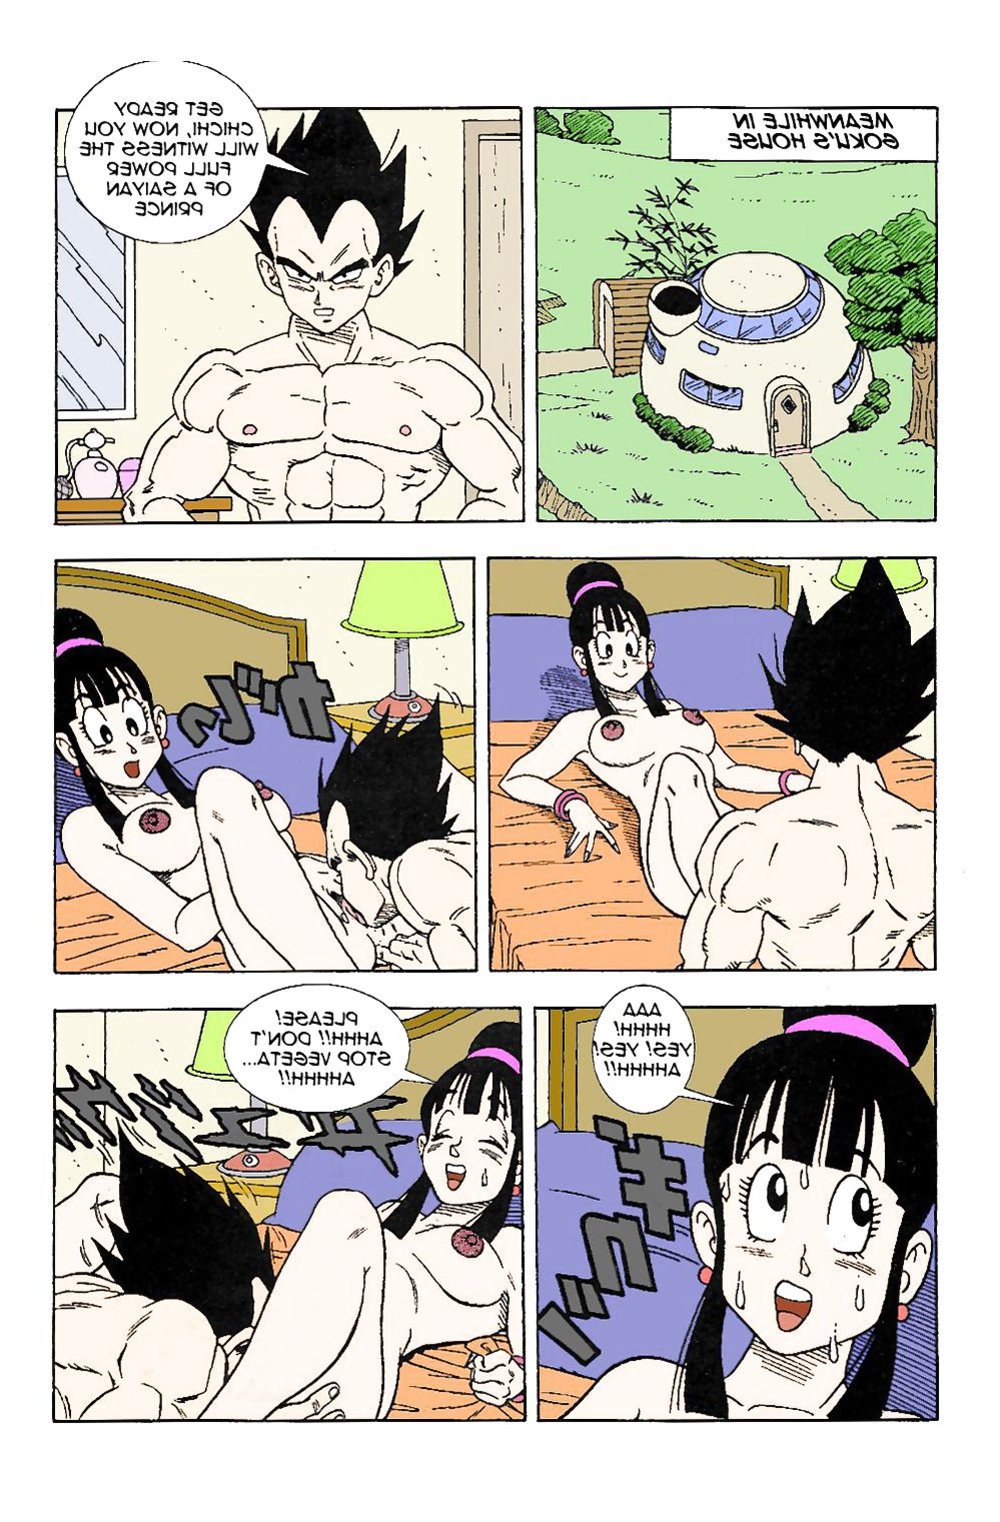 Dbz Vegeta Porks Gokus Wifey Chichi Zb Porn 6122